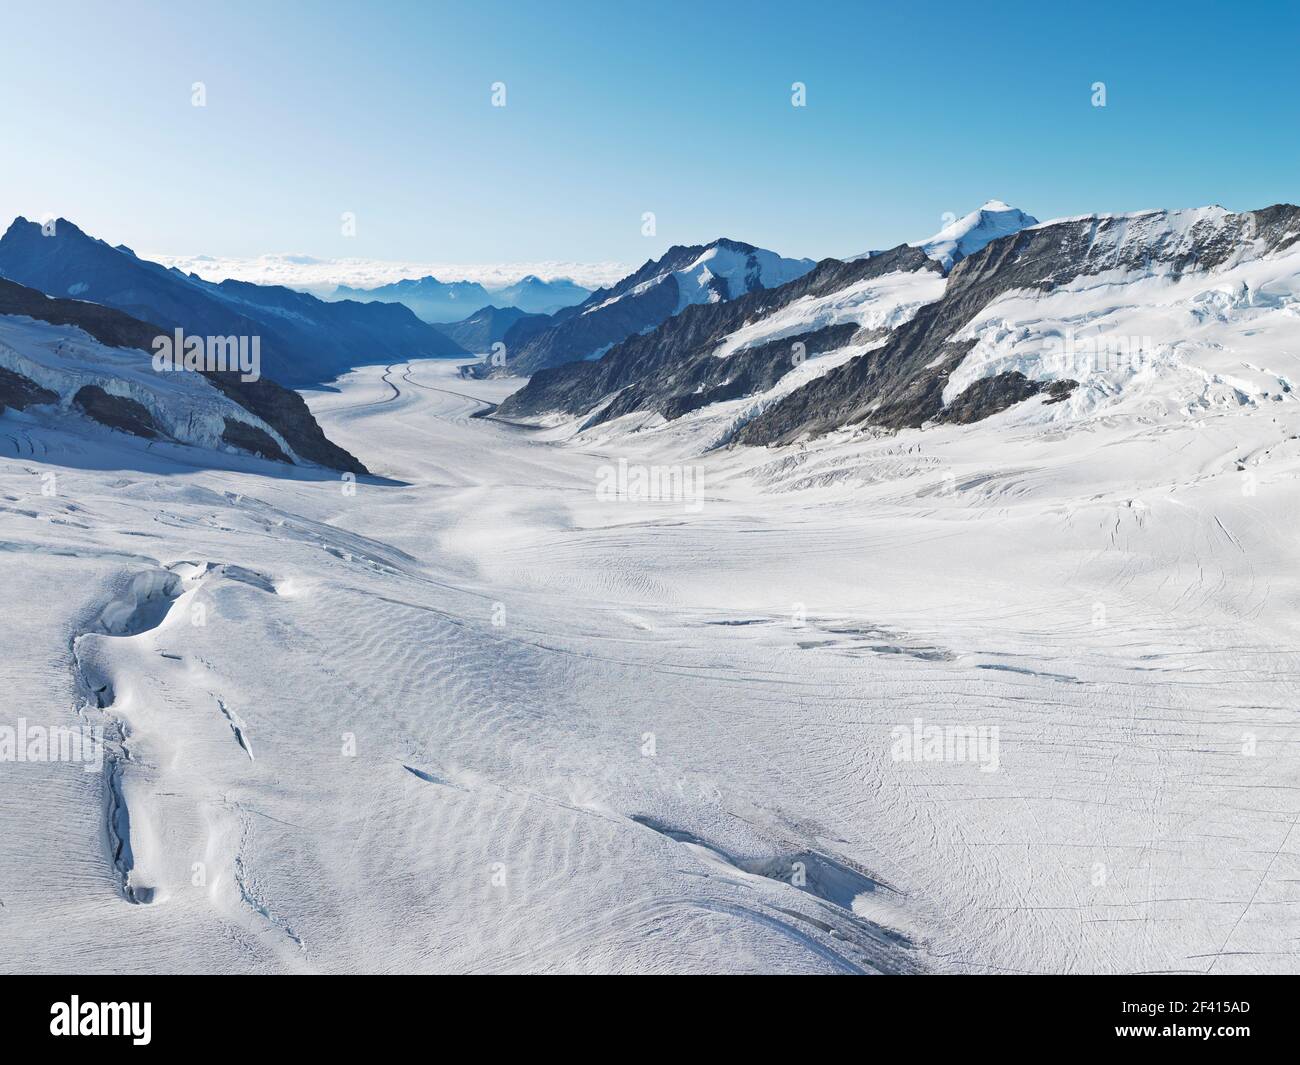 Der große Aletschgletscher, mit 22 km der längste Eisbach der Alpen, beginnt am Jungfraujoch-Gipfel Europas. Stockfoto